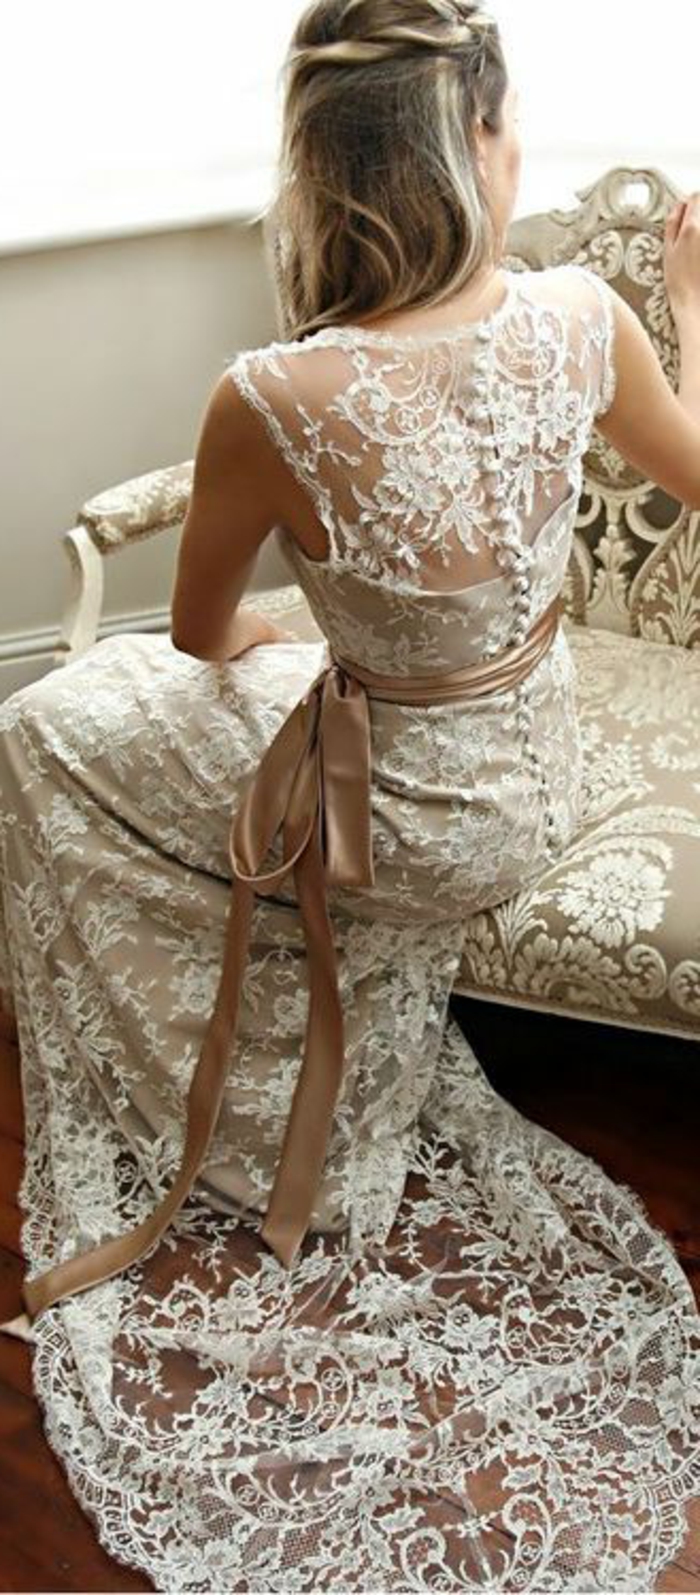 robe mariée couleur doux, tresse couronne, robe dentelle et ceinture en tissu satiné 